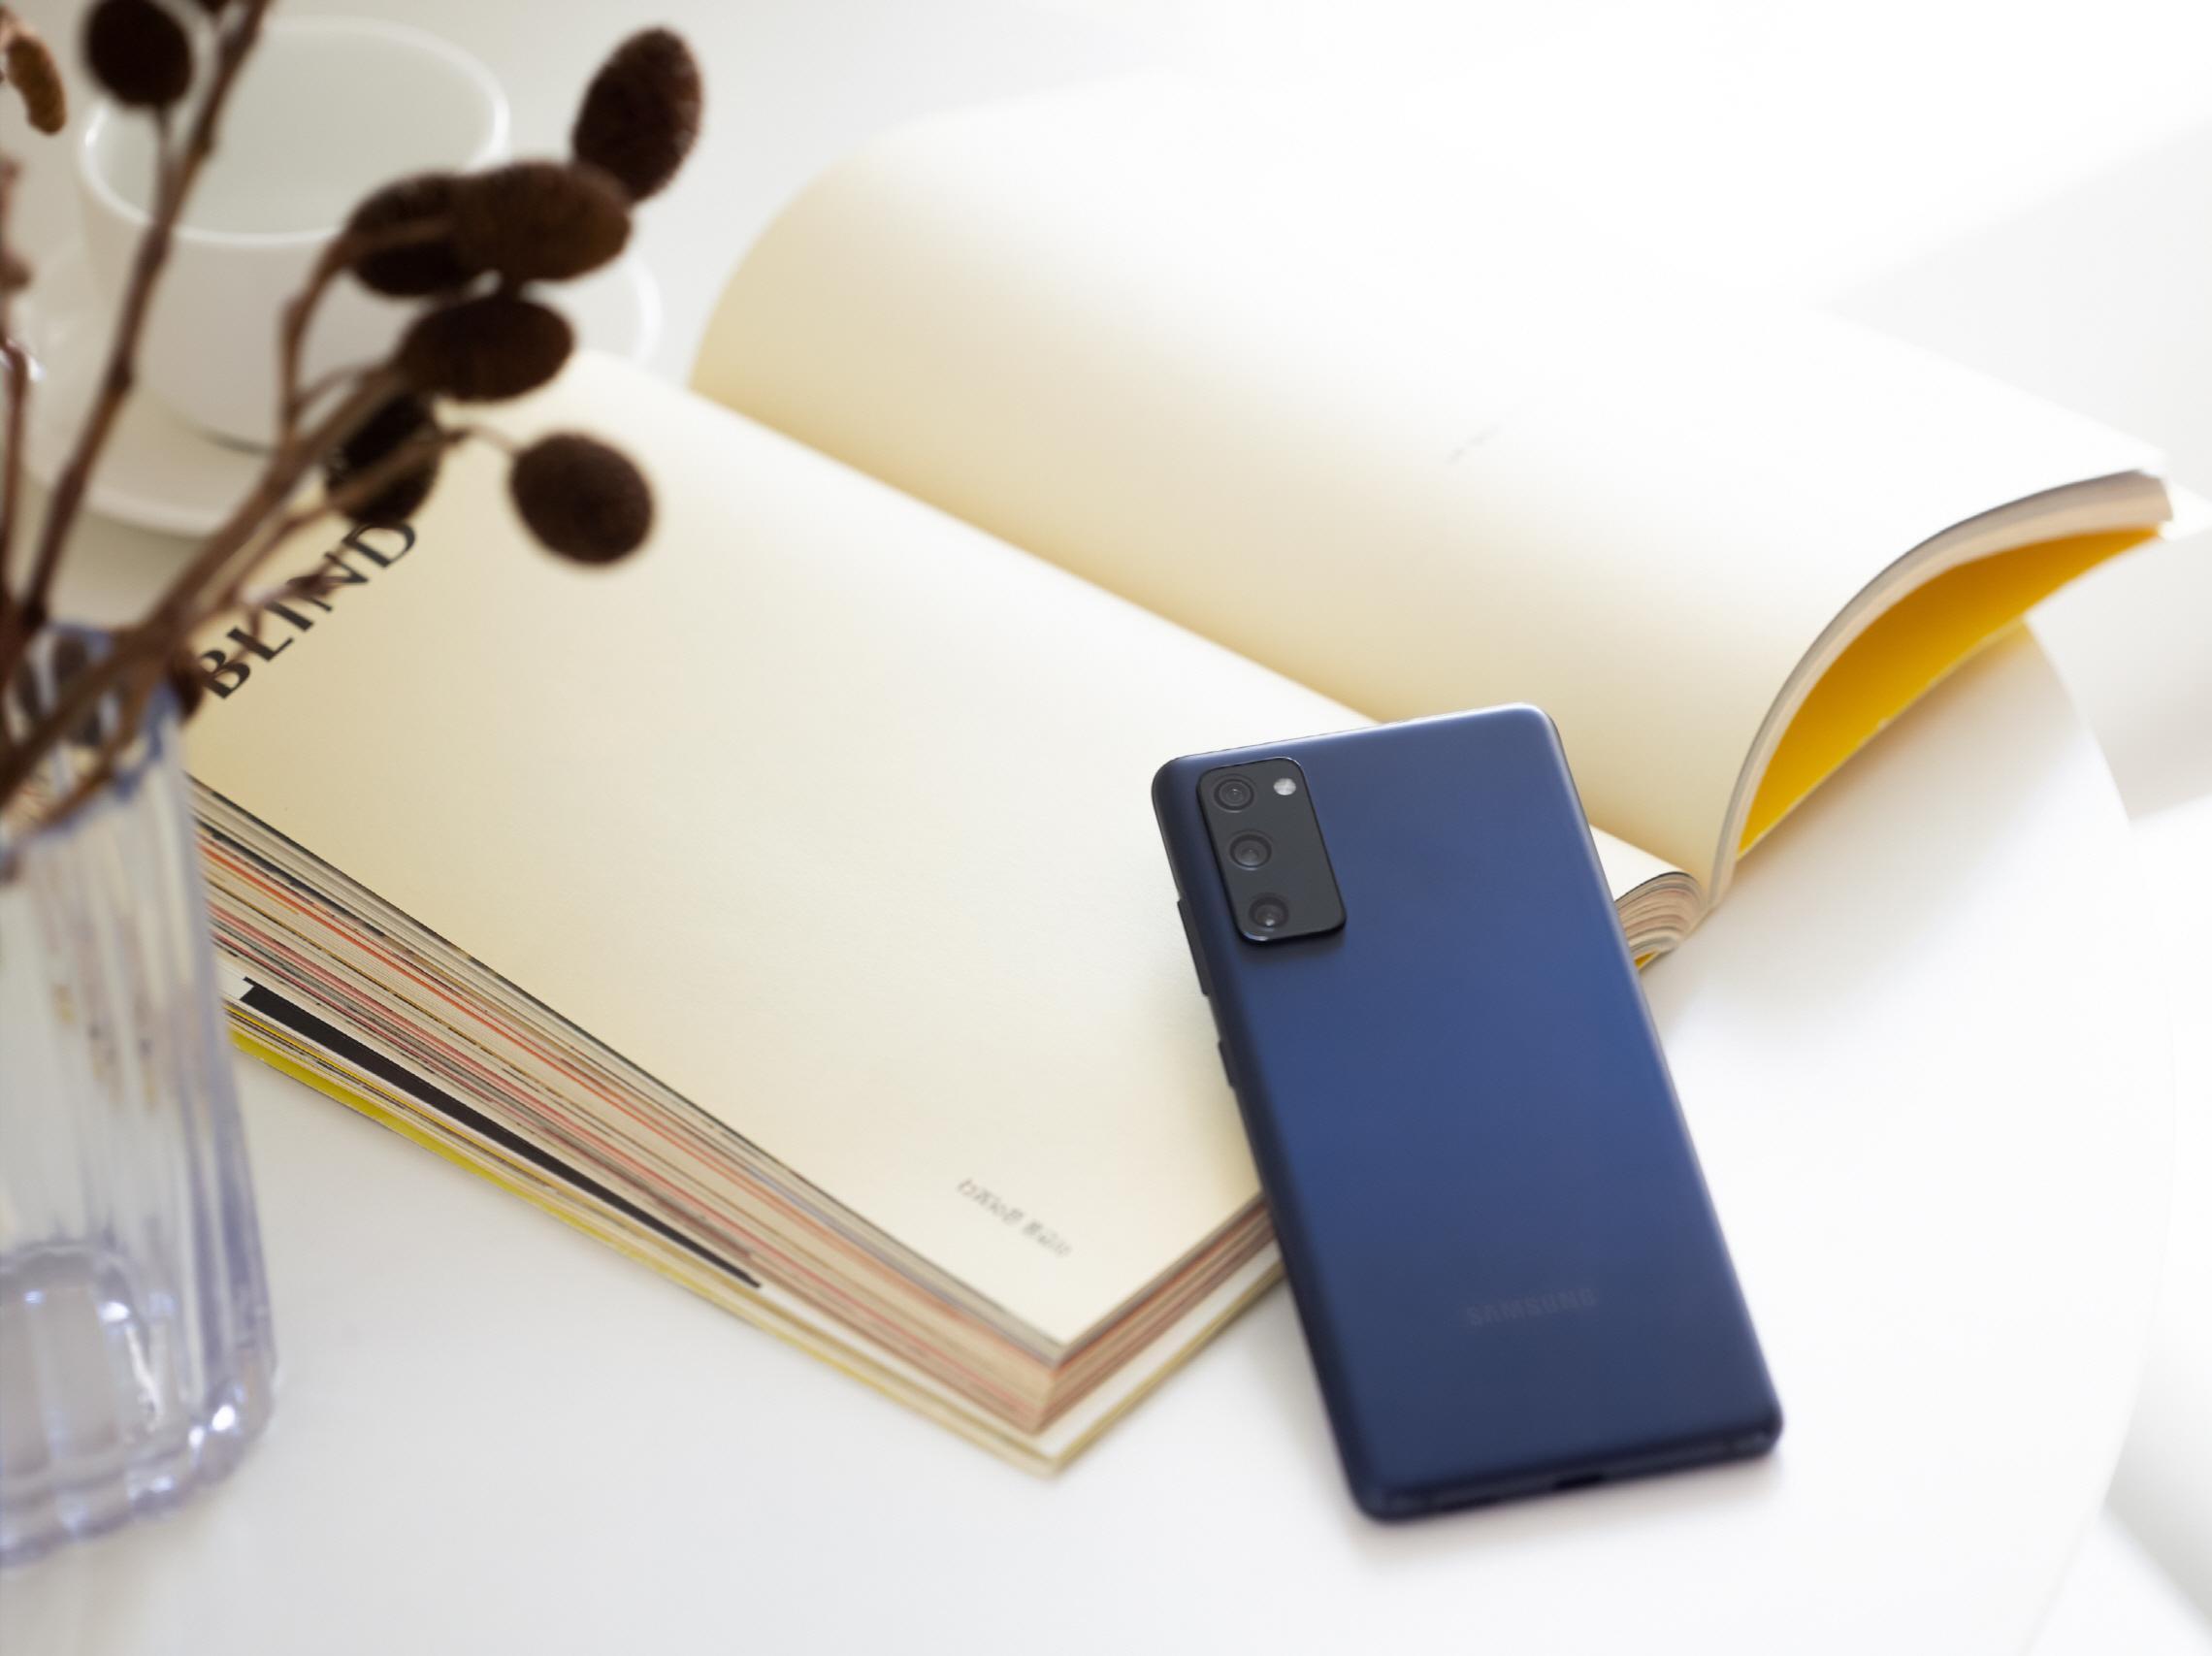 Samsung Galaxy S20 FE resmen tanıtıldı İşte fiyatı ve özellikleri